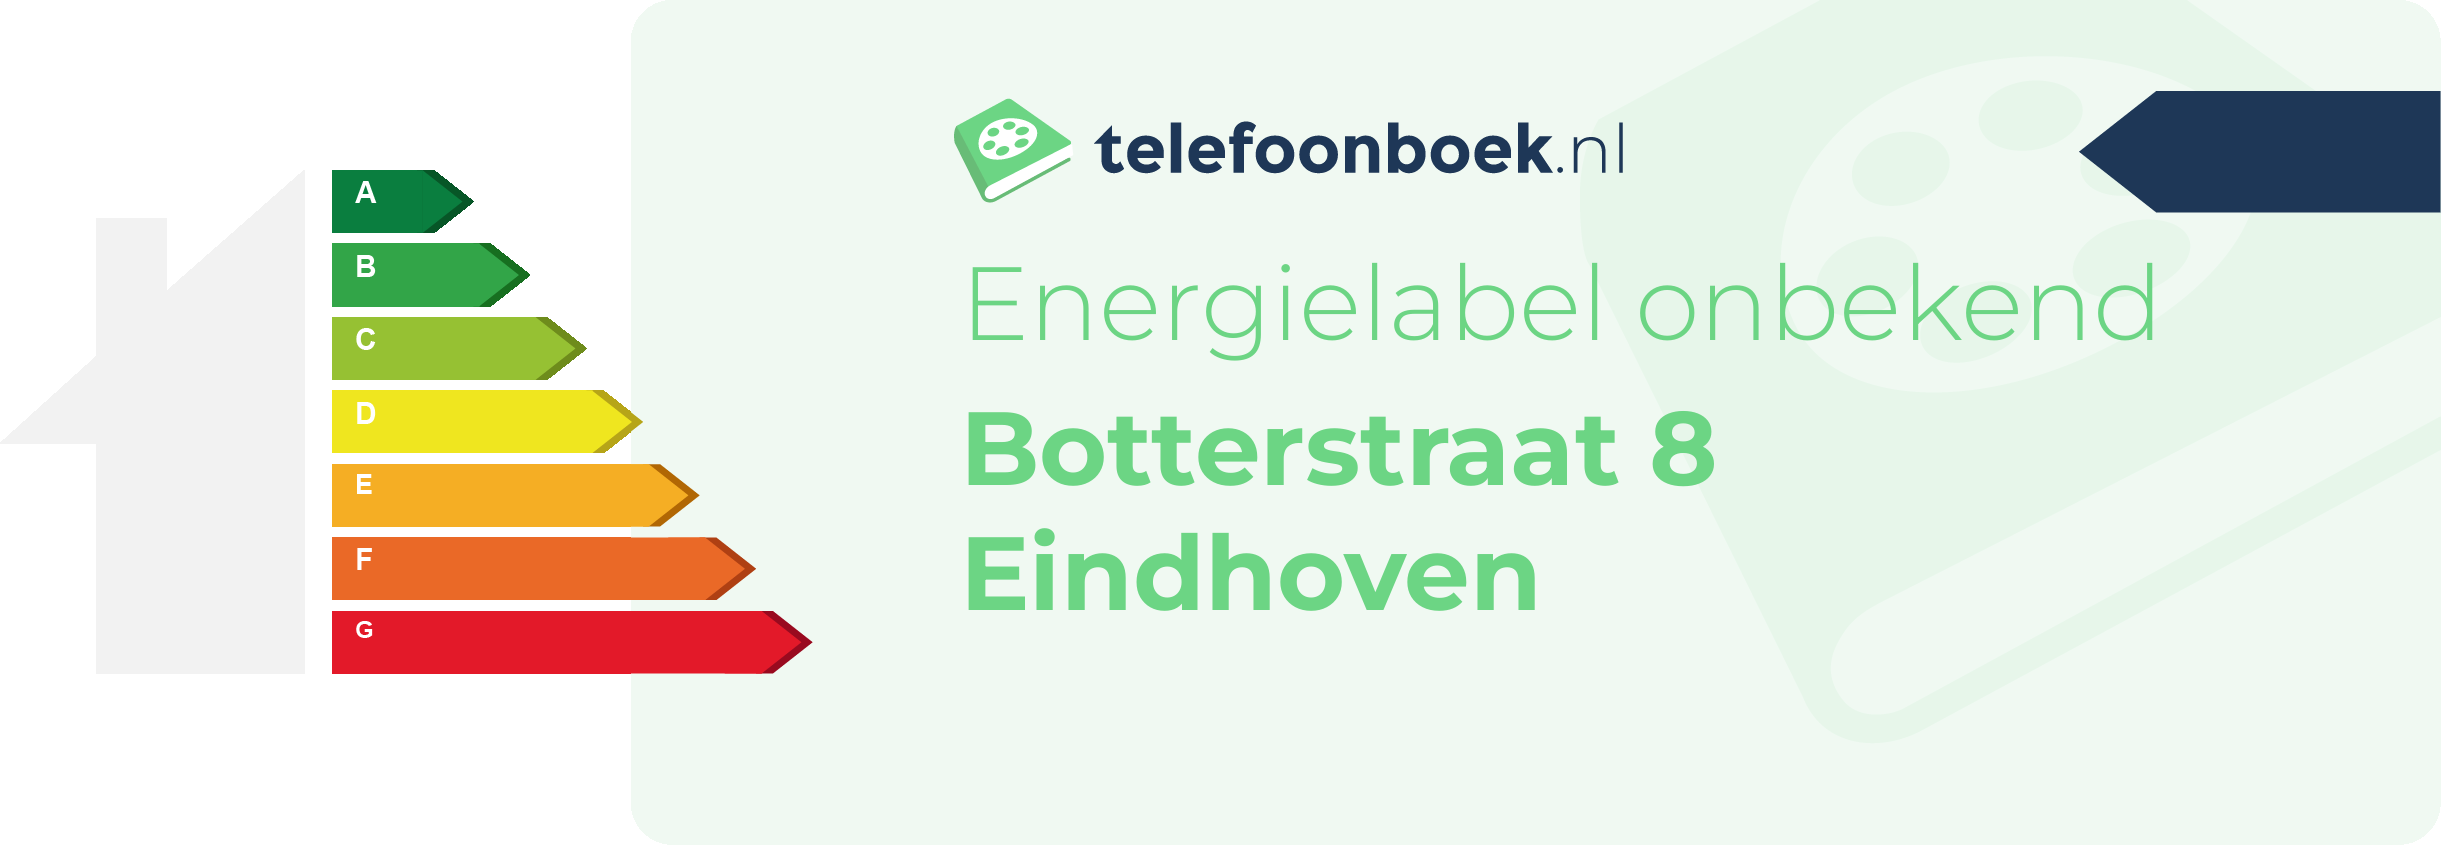 Energielabel Botterstraat 8 Eindhoven